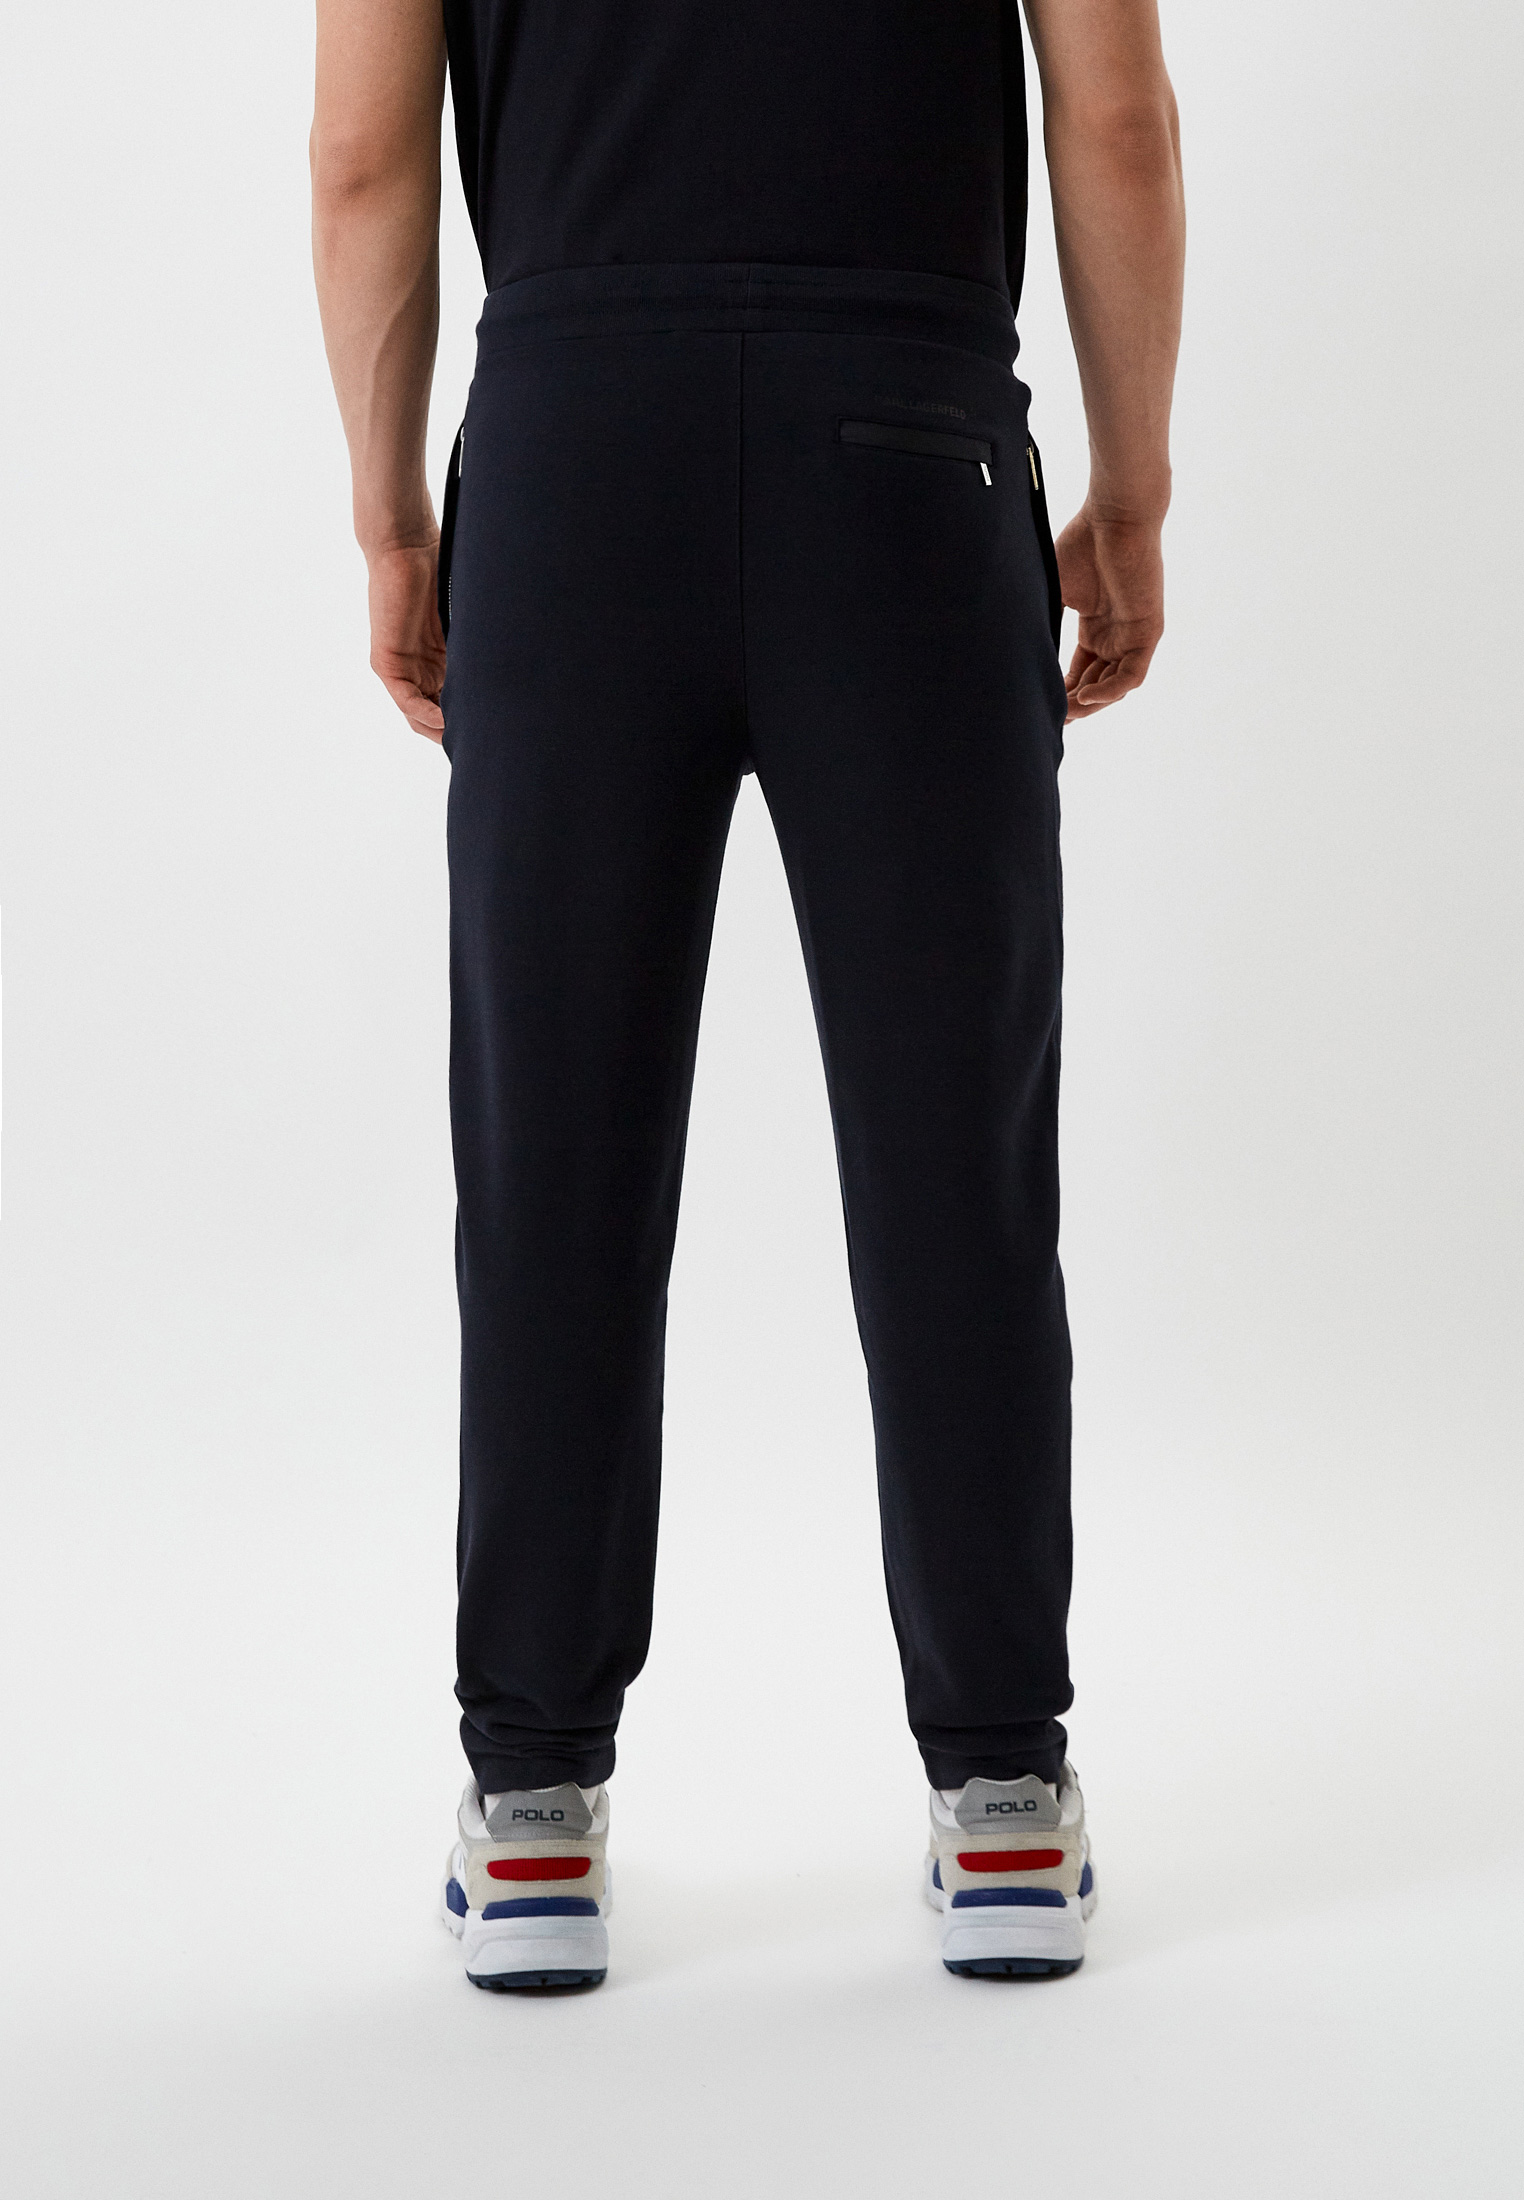 Мужские спортивные брюки Karl Lagerfeld (Карл Лагерфельд) 521900-705088: изображение 7